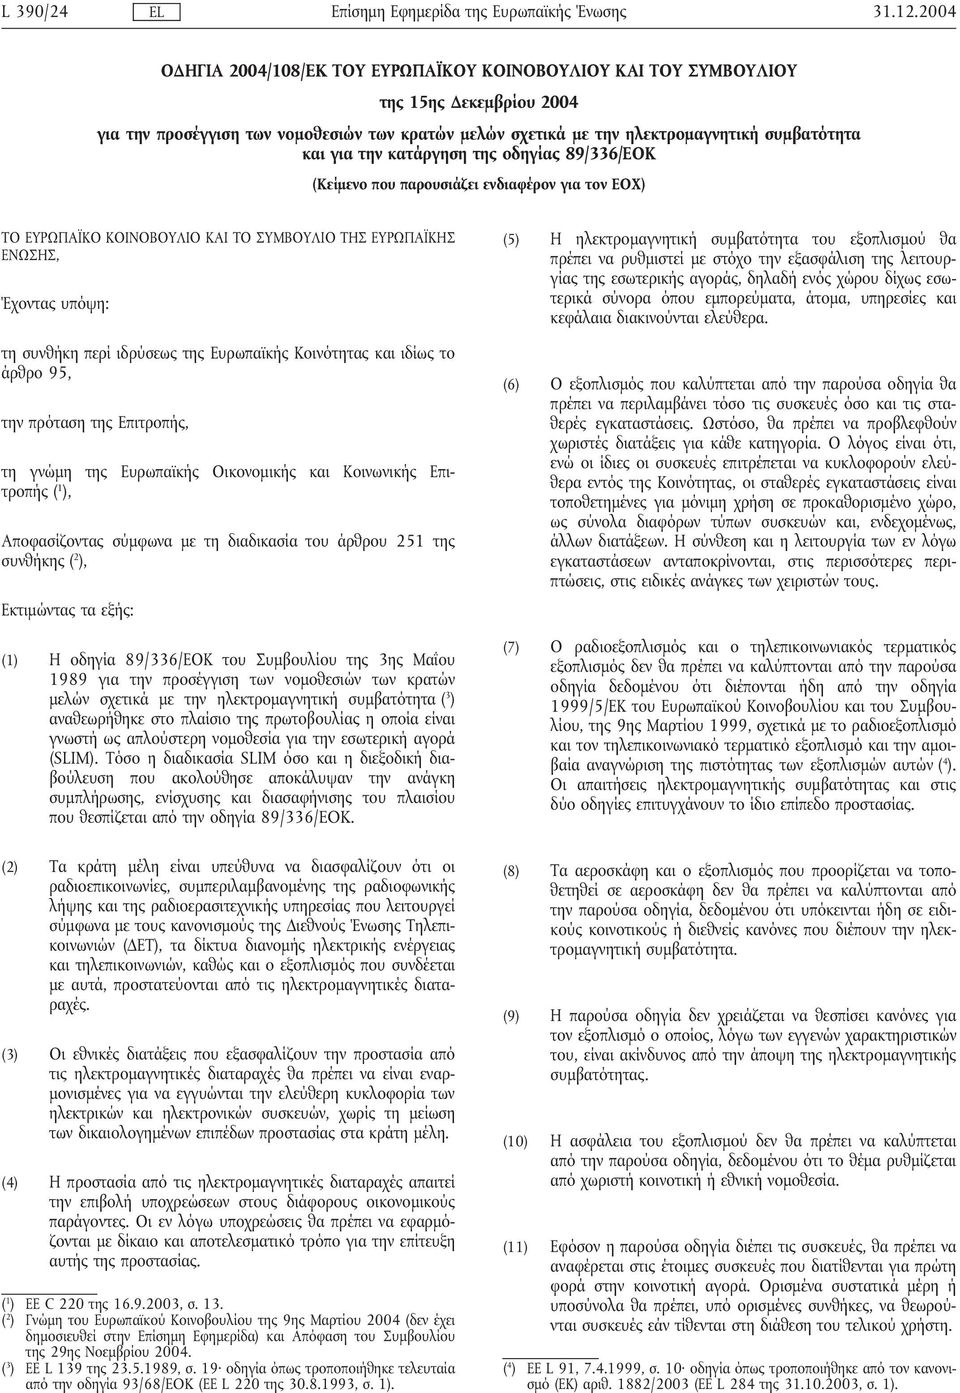 την κατάργηση της οδηγίας 89/336/ΕΟΚ (Κείµενο που παρουσιάζει ενδιαφέρον για τον ΕΟΧ) ΤΟ ΕΥΡΩΠΑΪΚΟ ΚΟΙΝΟΒΟΥΛΙΟ ΚΑΙ ΤΟ ΣΥΜΒΟΥΛΙΟ ΤΗΣ ΕΥΡΩΠΑΪΚΗΣ ΕΝΩΣΗΣ, Έχοντας υπόψη: τη συνθήκη περί ιδρύσεως της